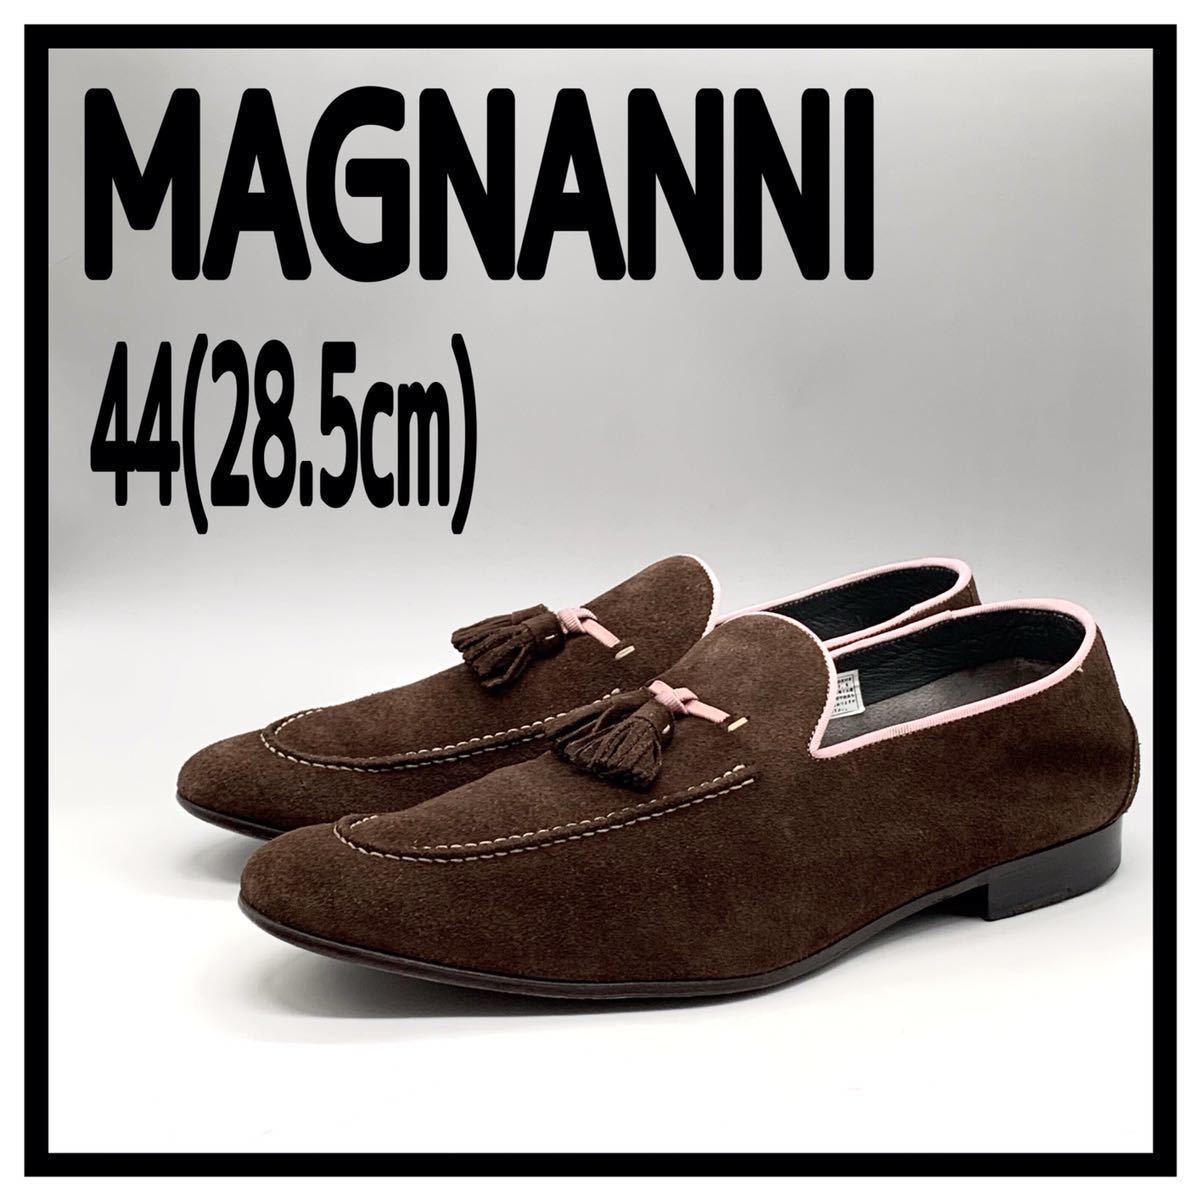 MAGNANNI（マグナーニ）タッセルローファー スリッポン スエード ブラウン ピンク 44 28.5cm 革靴 シューズ スペイン製 メンズ 靴